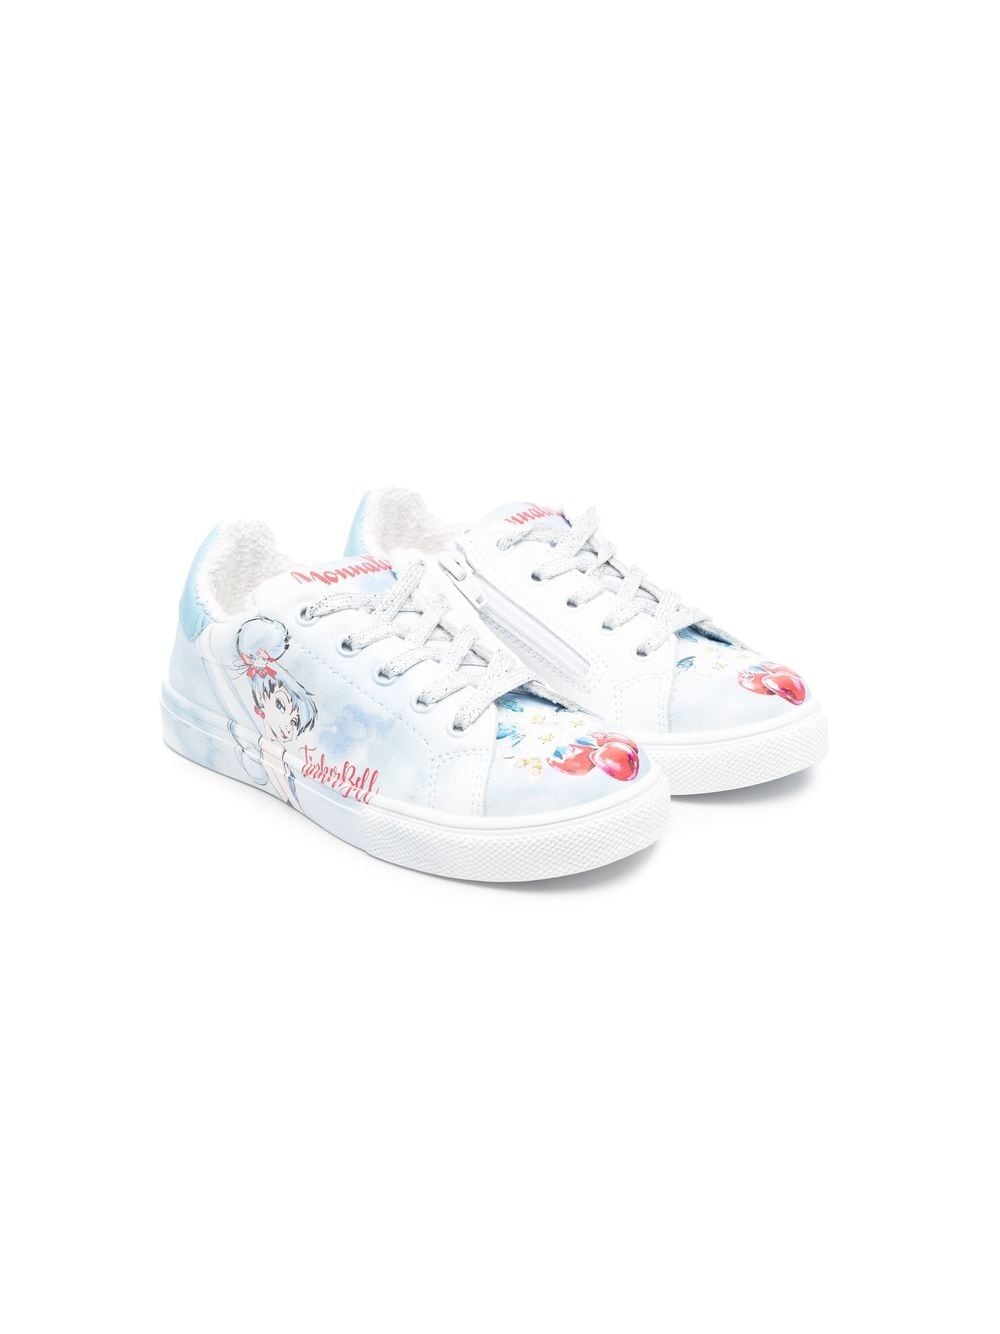 Monnalisa Kids' Tinkerbell Low-top Sneakers In White